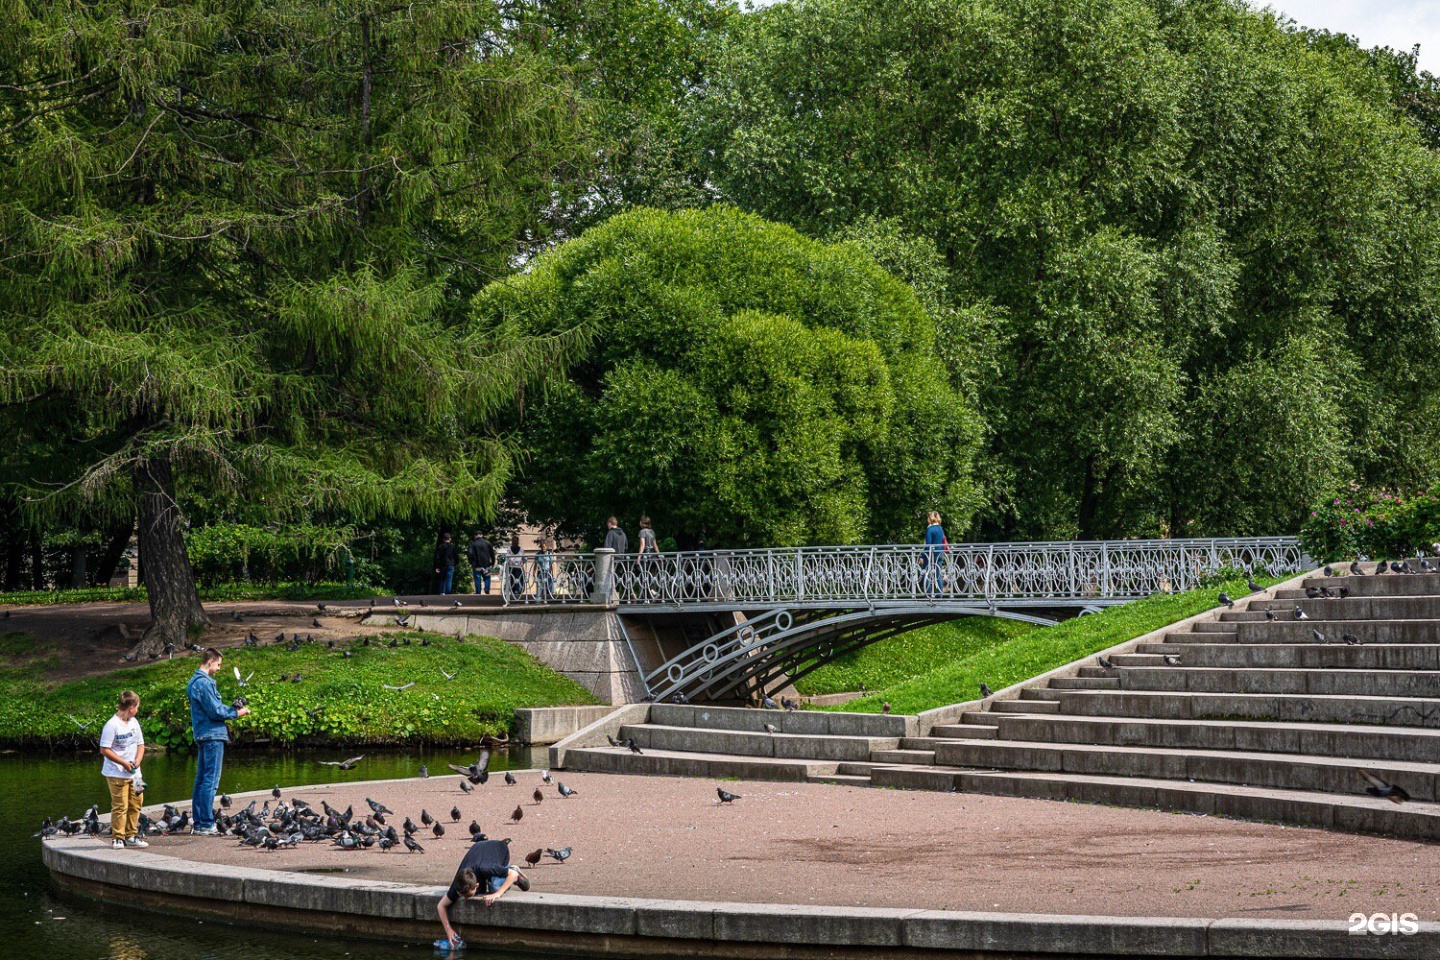 Таврический сад санкт-петербурга. история создания сада, сад в прошлом и в наши дни